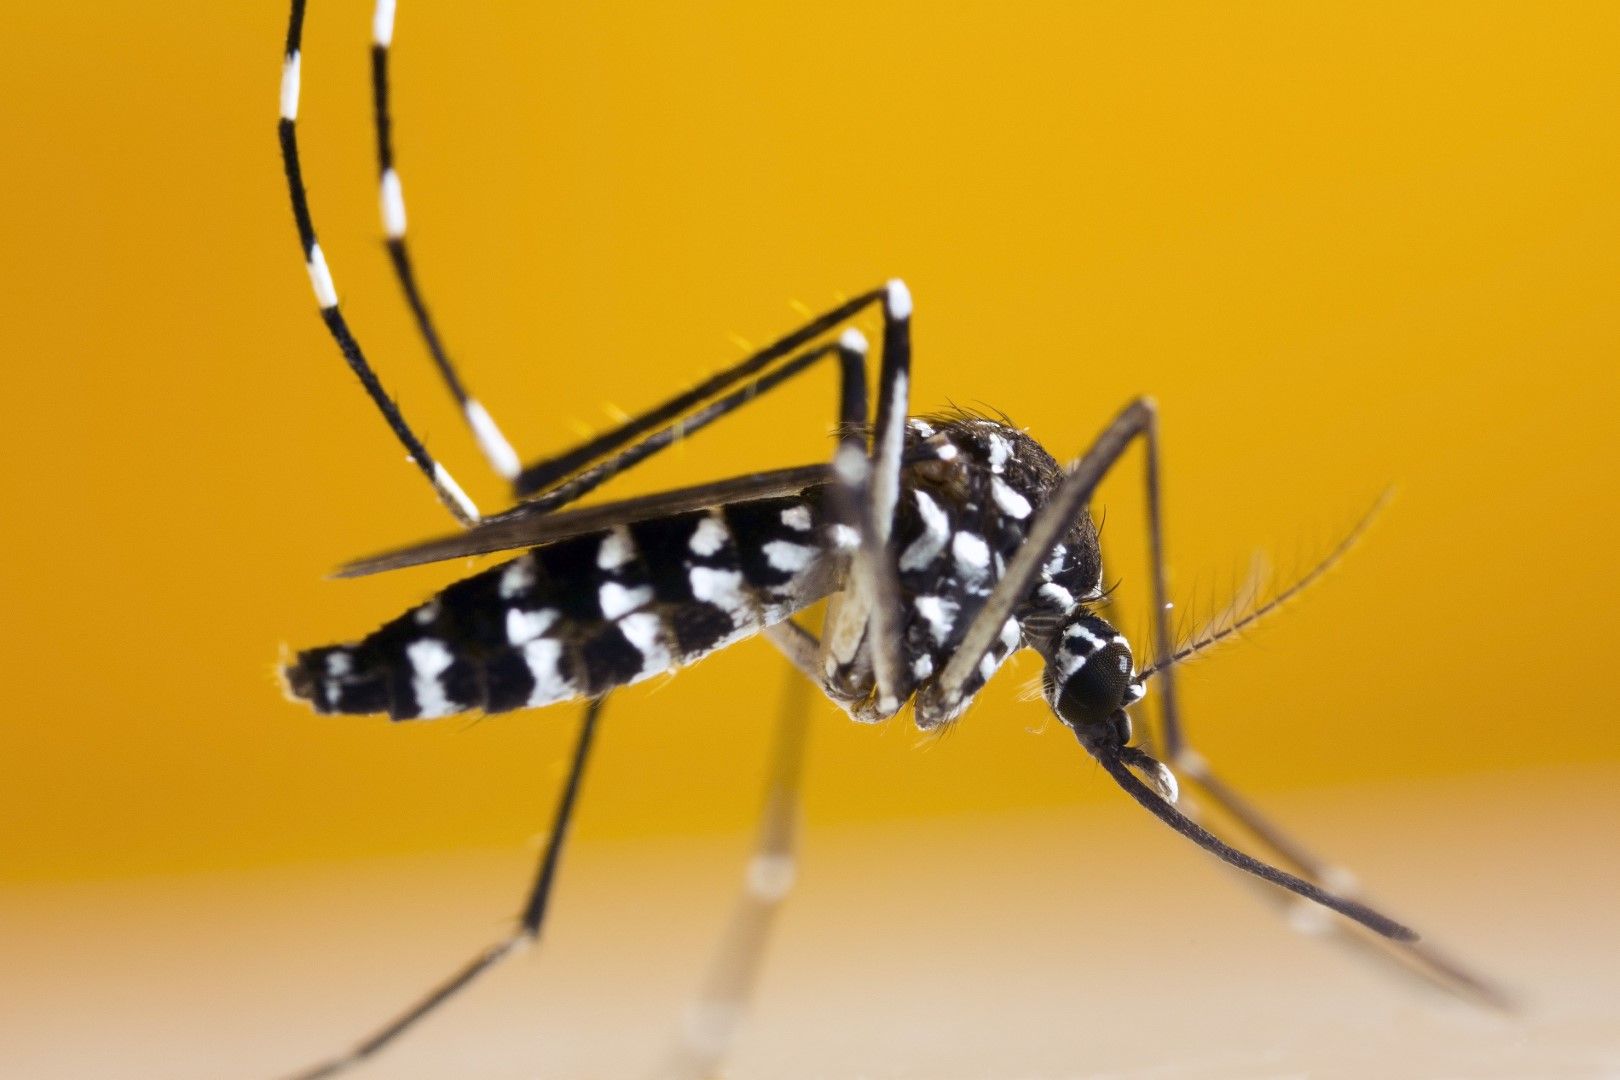 Сред причините за разболяване от вируса могат да бъдат комарите и досега на хората до замърсени места